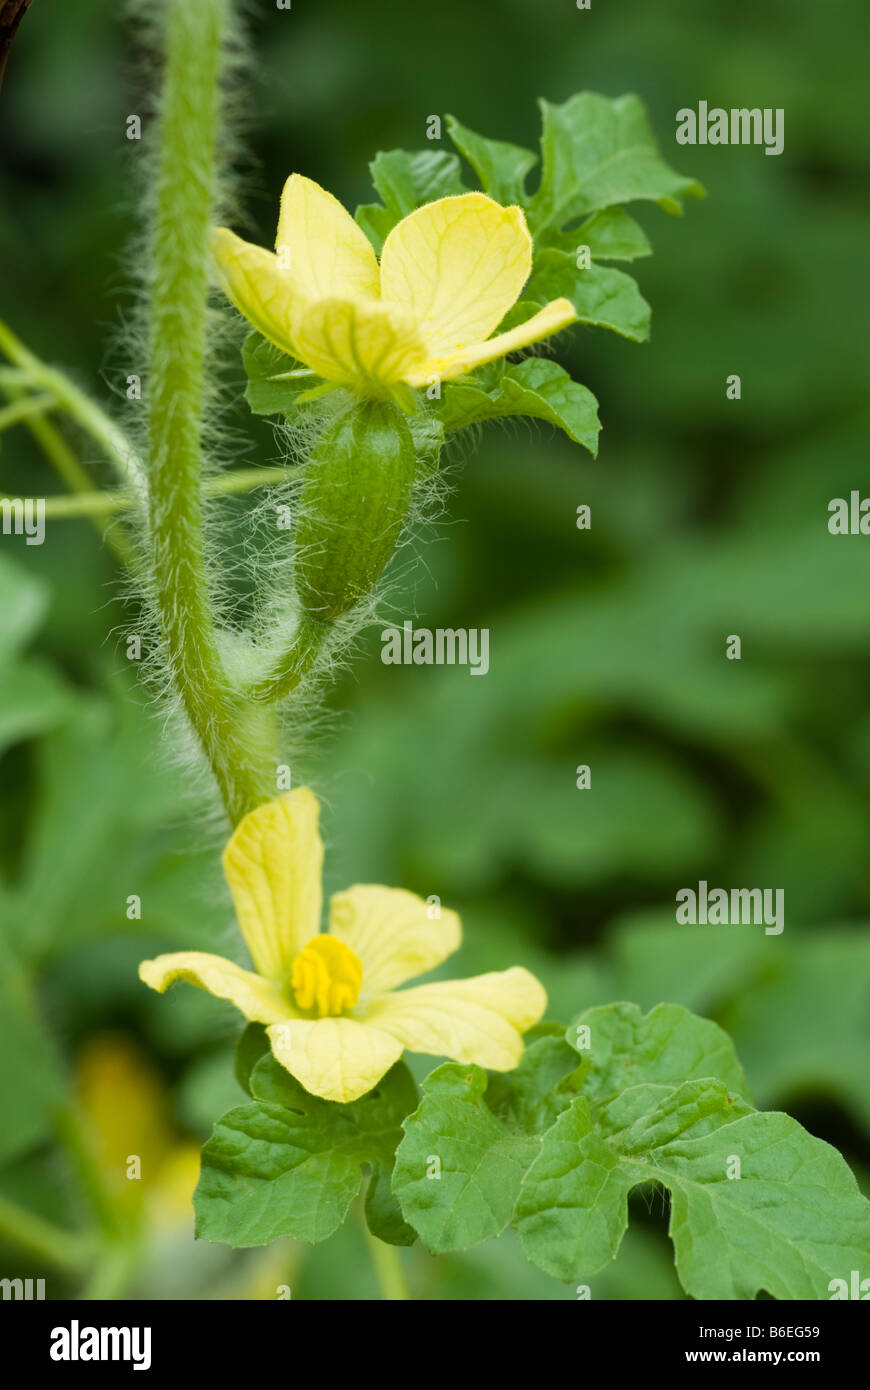 Fiori di melone immagini e fotografie stock ad alta risoluzione - Alamy